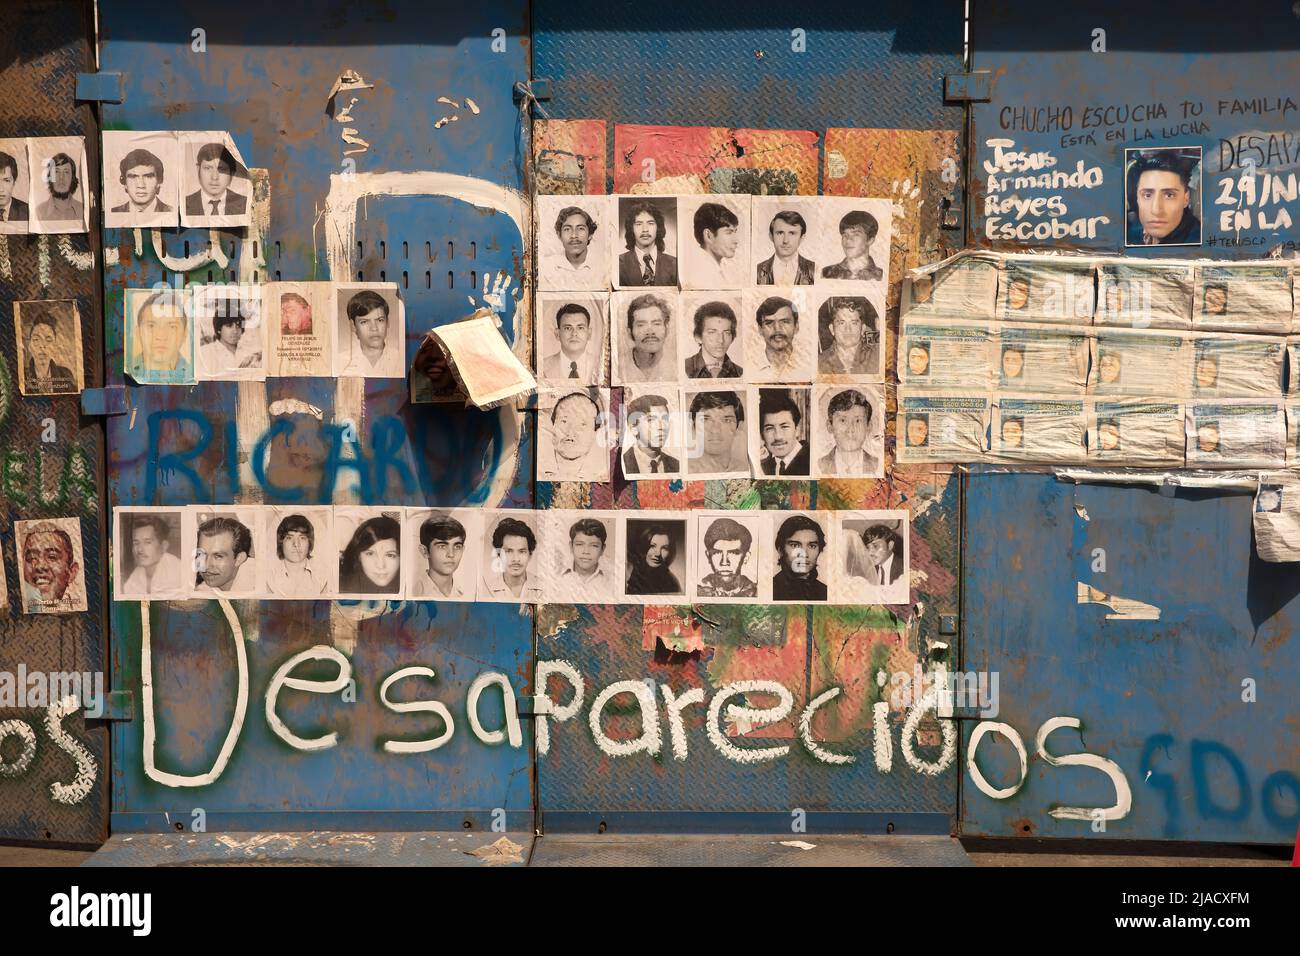 Imágenes de personas desaparecidas publicadas en el muro conmemorativo improvisado de los desaparecidos en la Ciudad de México, México Foto de stock